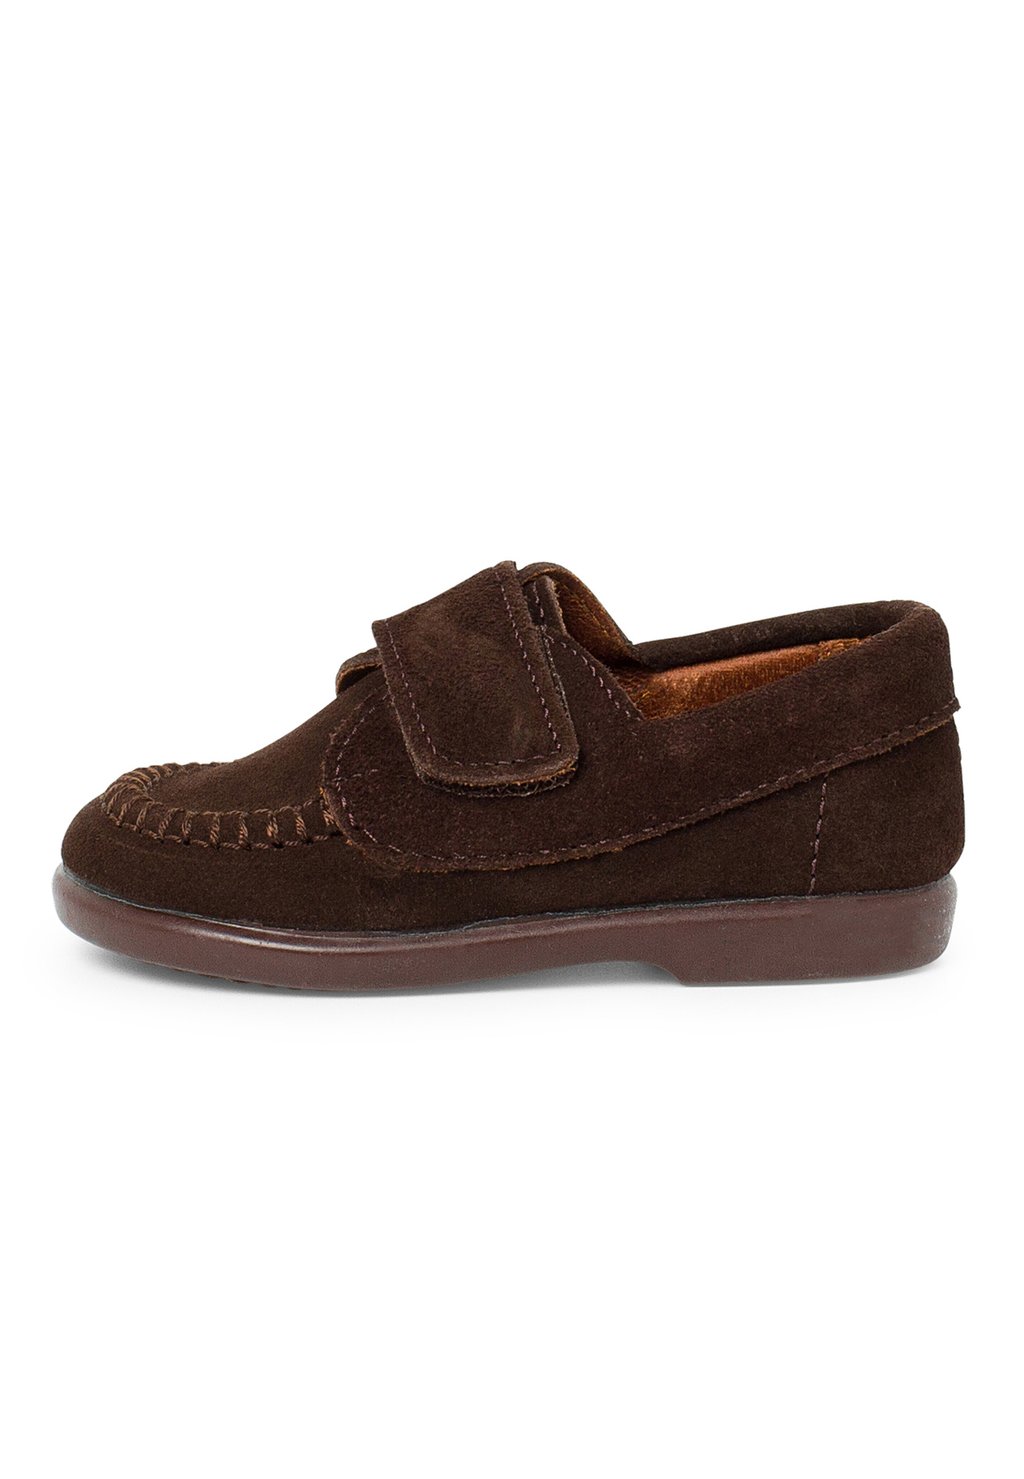 Обувь для обучения TIRA ADHERENTE Pisamonas, цвет marrón